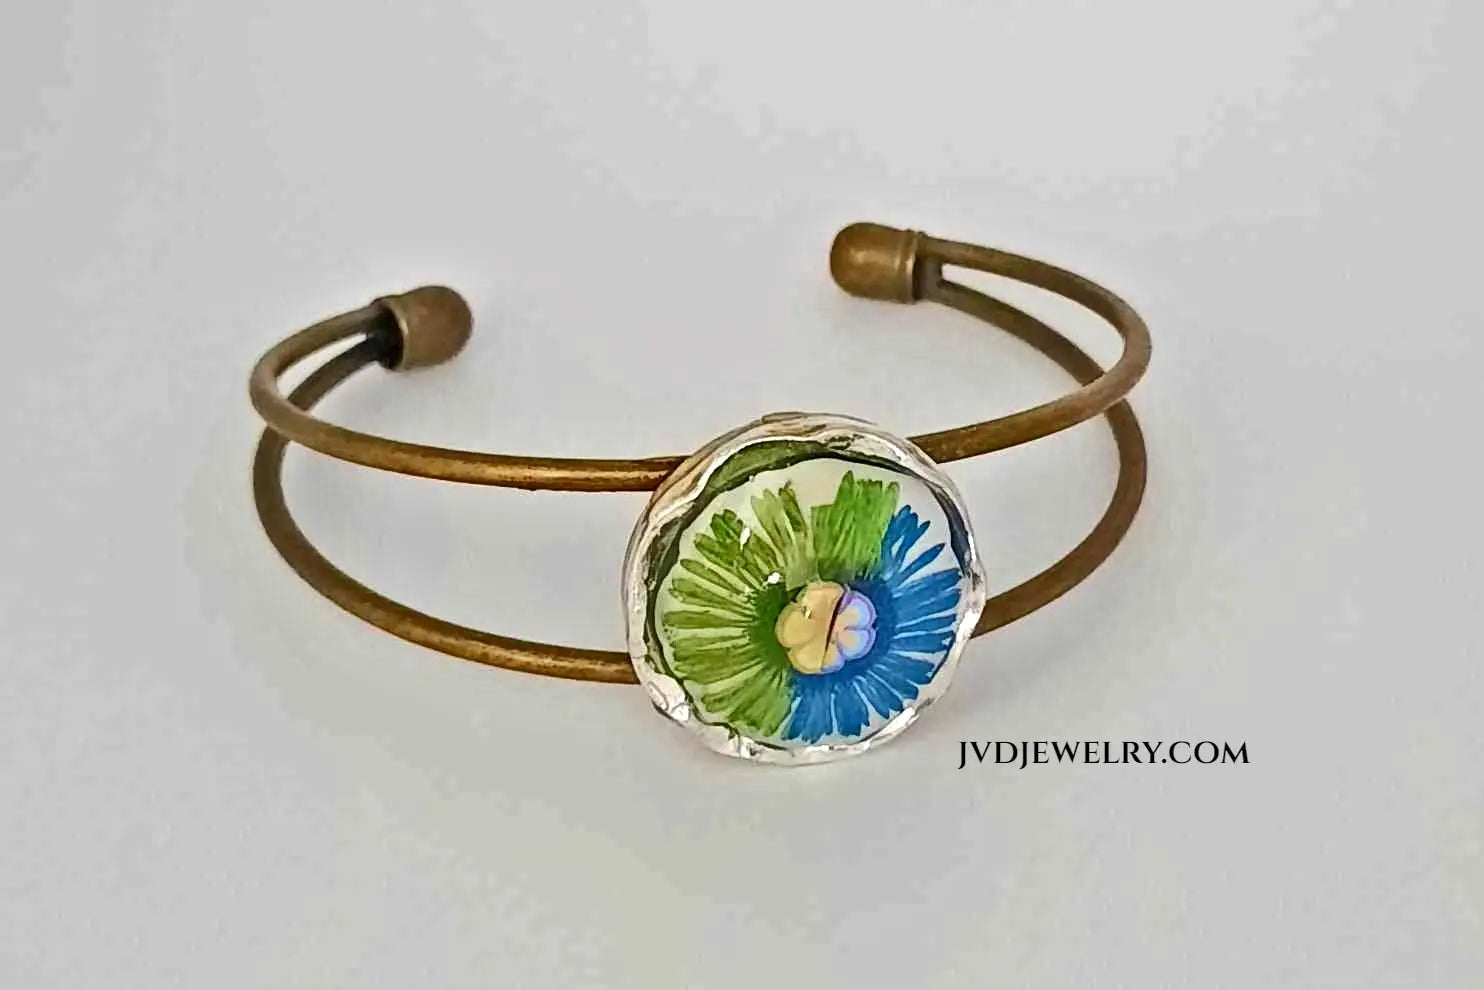 Adjustable handcrafted antique copper adjustable cuff bracelet - Image #1